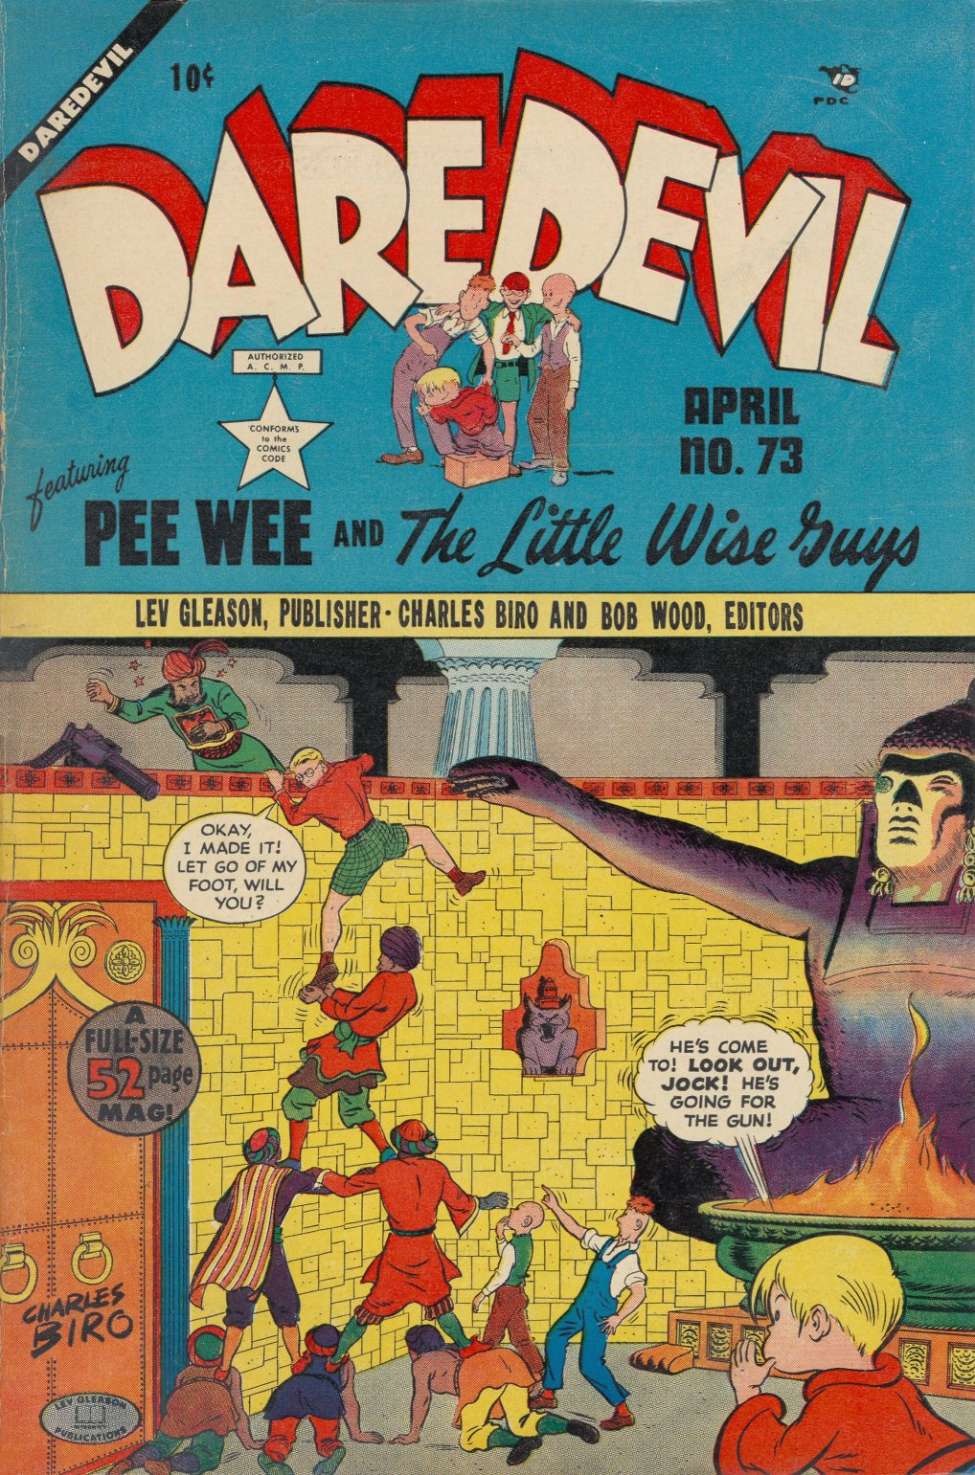 Book Cover For Daredevil Comics 73 - Version 1